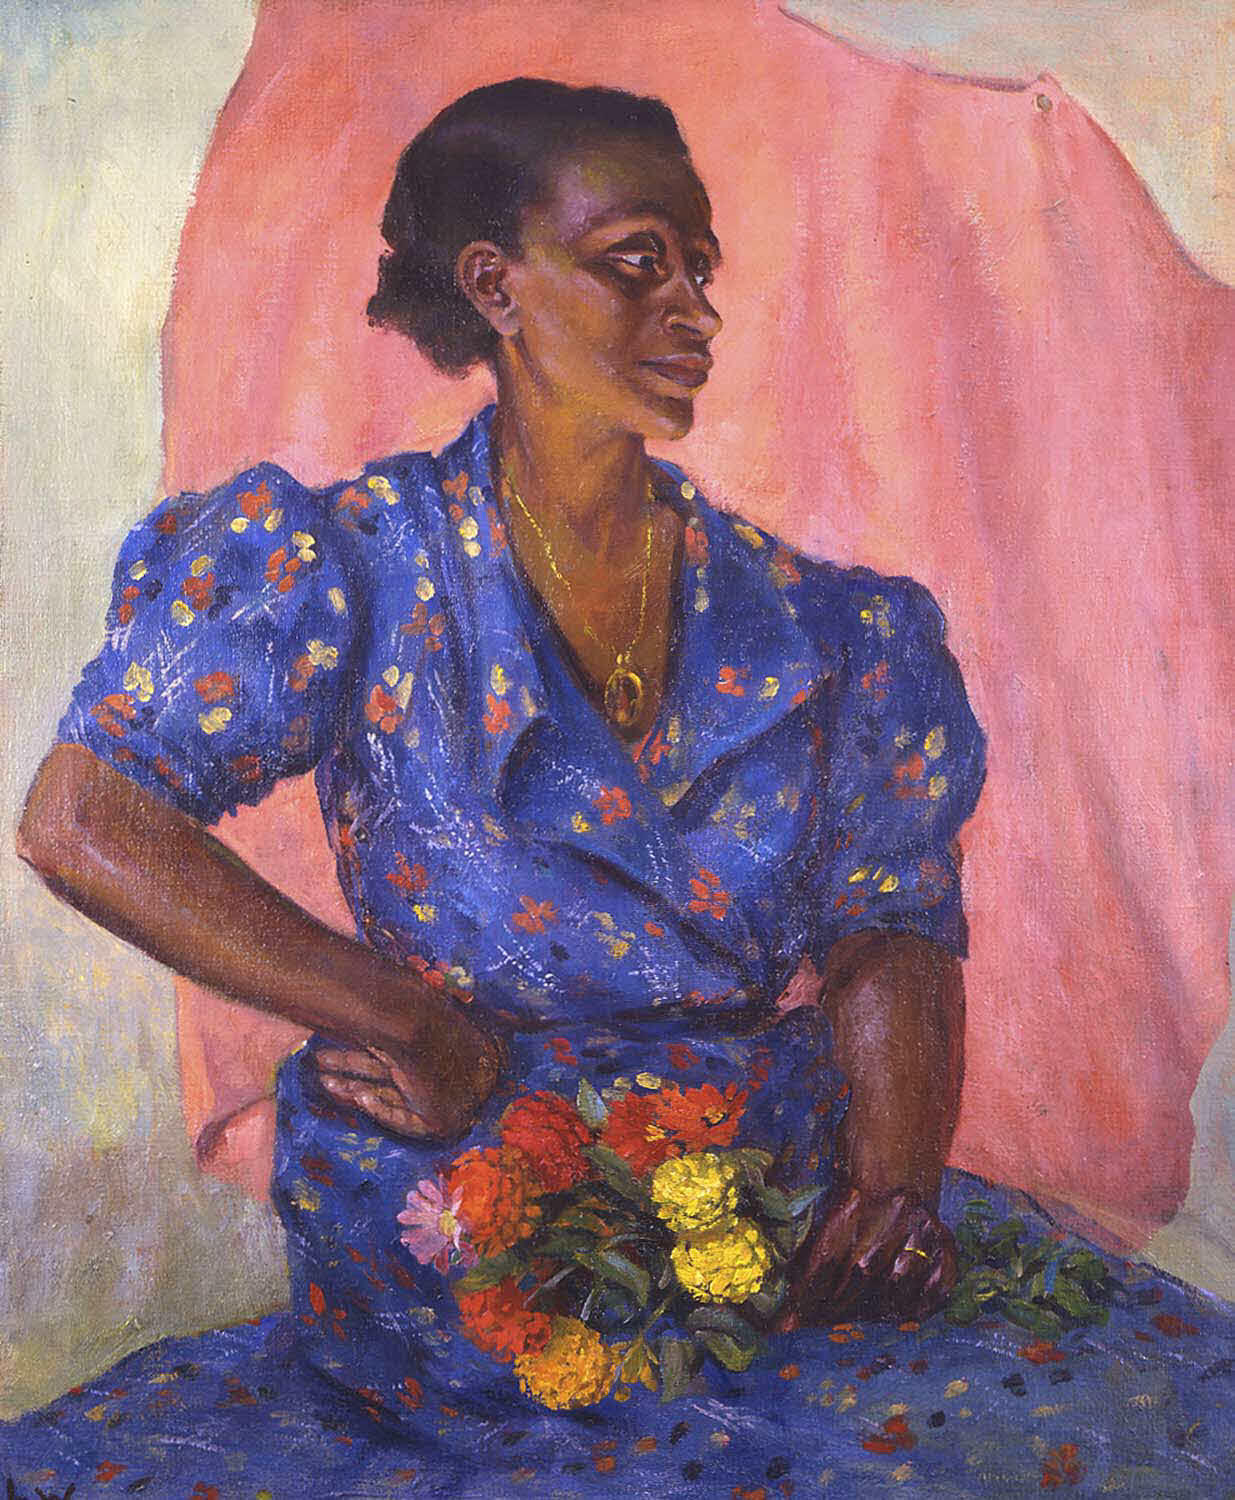 拿着花束的女人 by 劳拉 ·  惠勒 · 沃林 - 1940 - 76.2 x 63.5 cm 布鲁克林博物馆